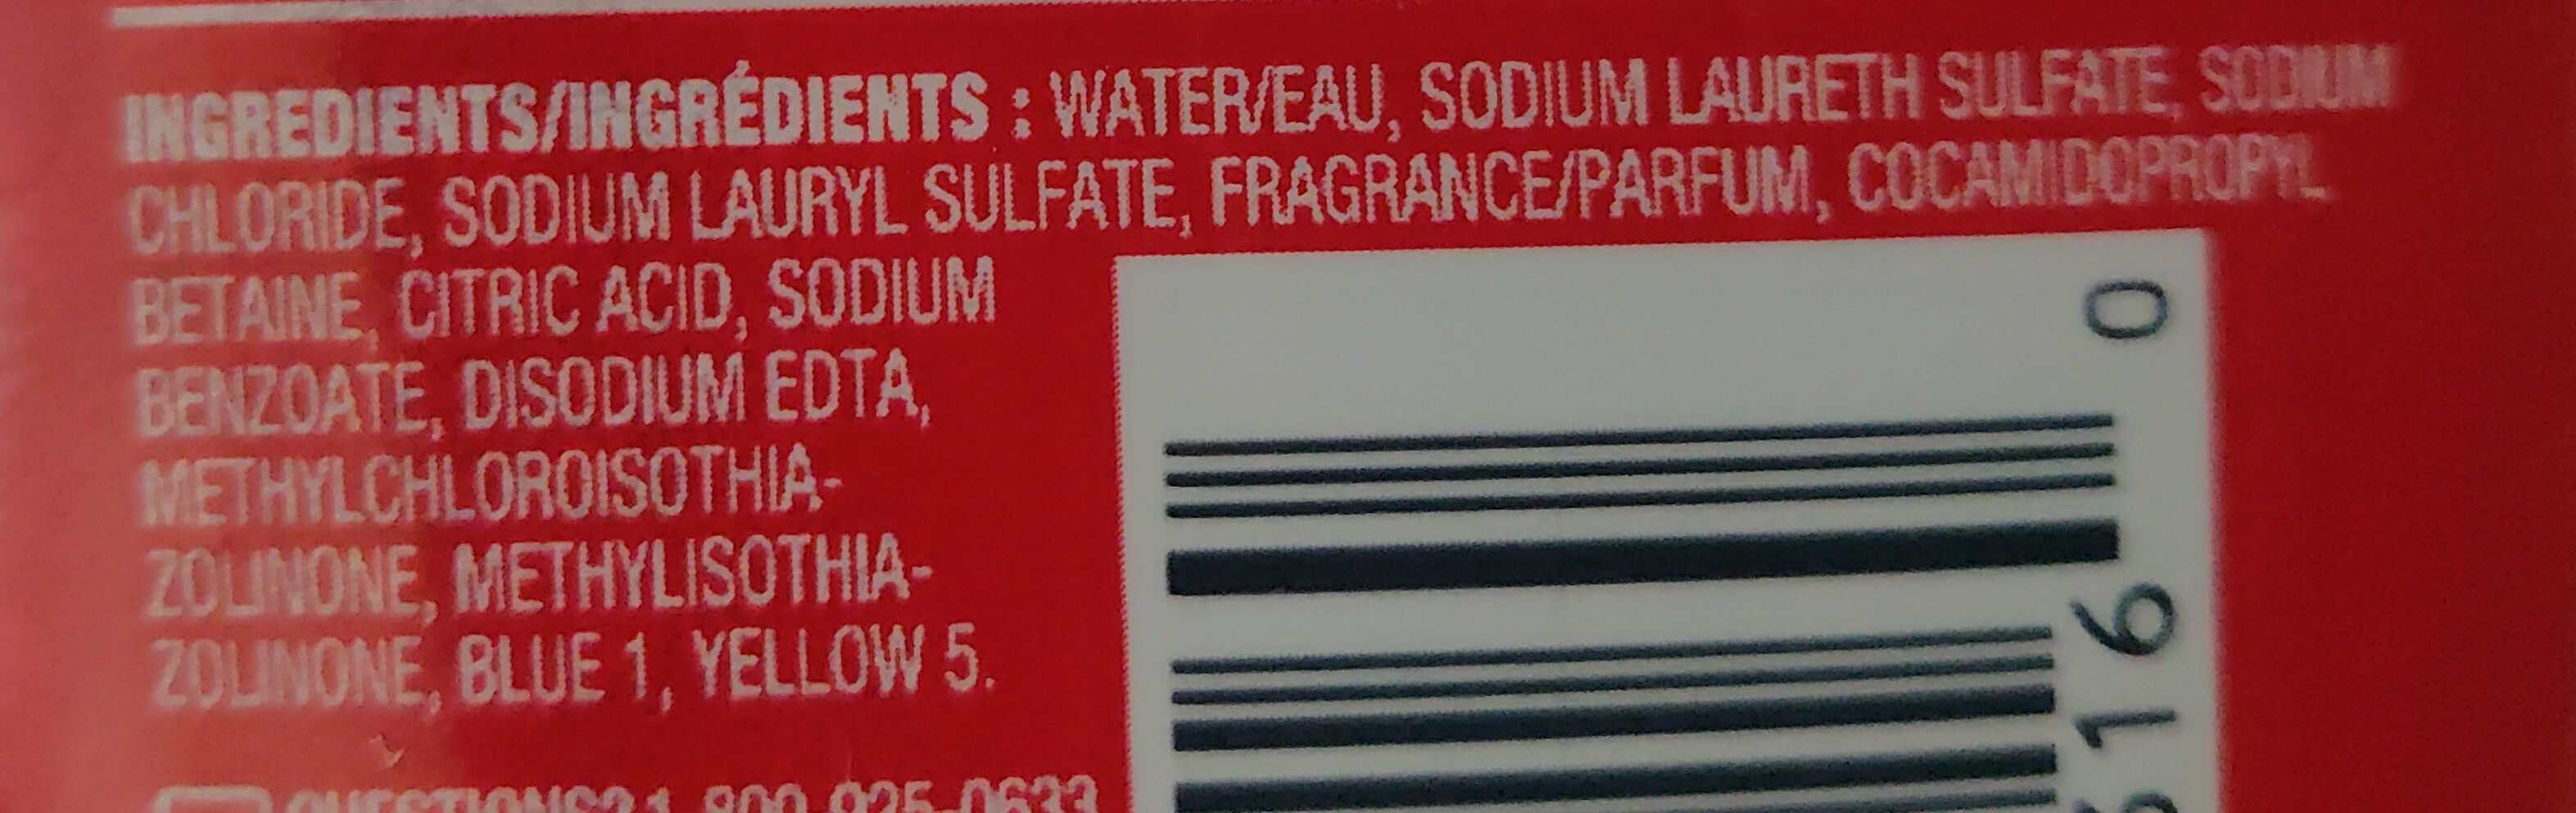 Body Wash - Ingredients - en